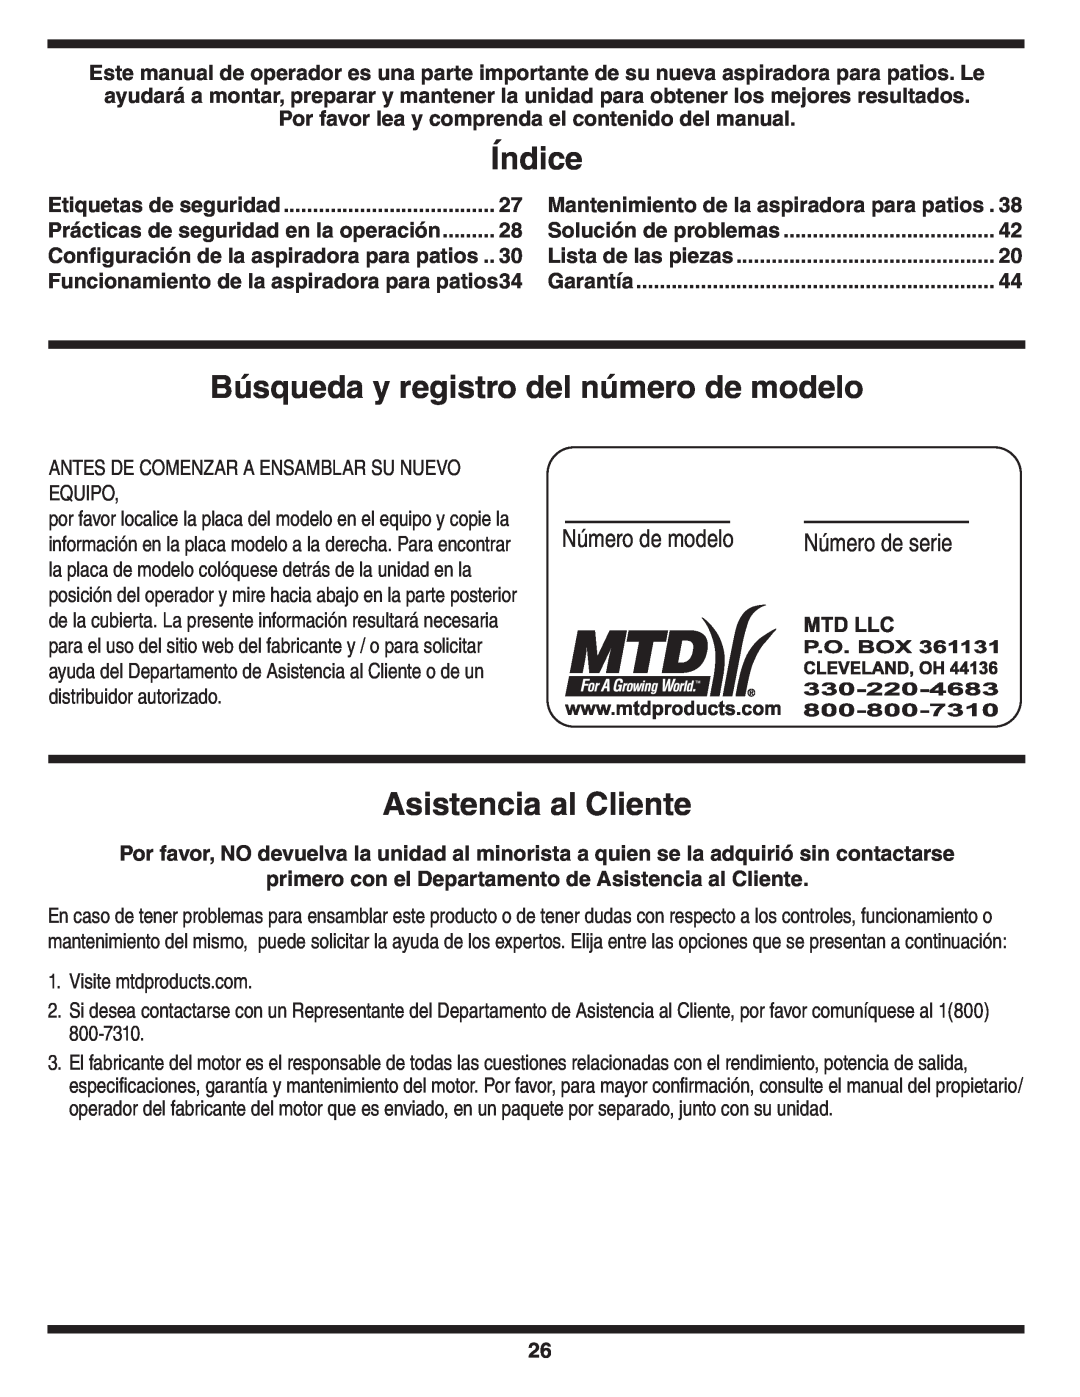 MTD Series 020 Índice, Búsqueda y registro del número de modelo, Asistencia al Cliente, Número de serie, Número de modelo 